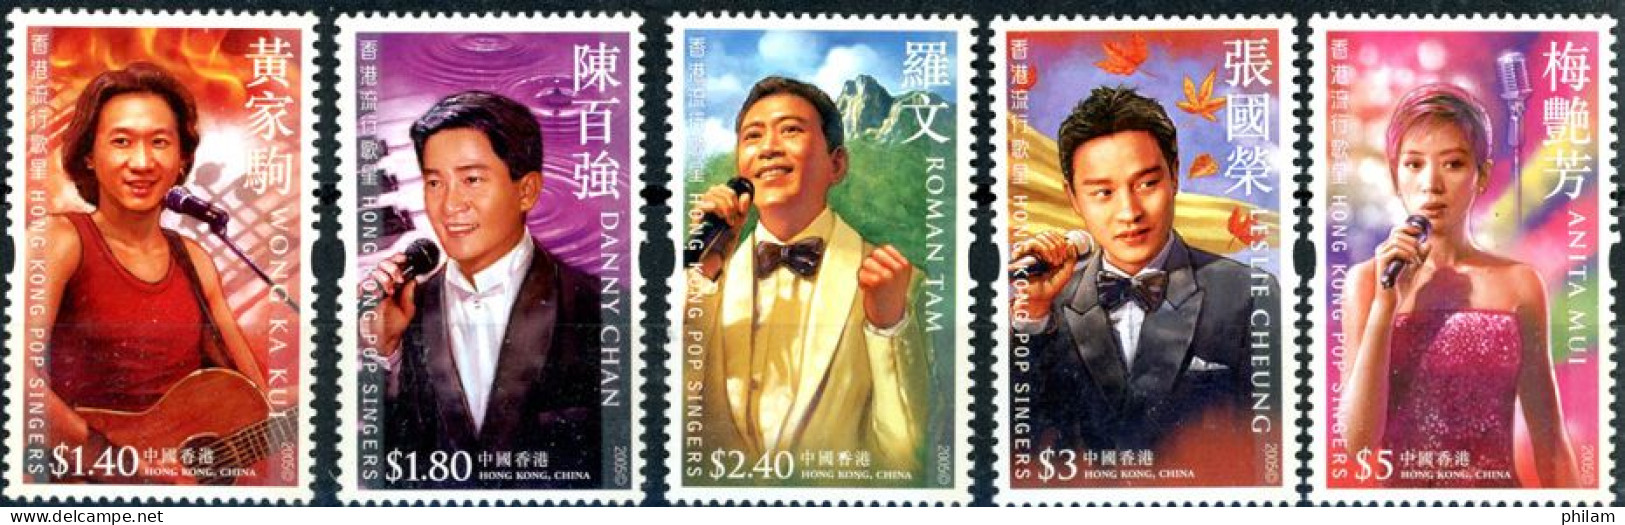 HONG KONG 2005 - Chanteurs Pop - 5 V. - Neufs